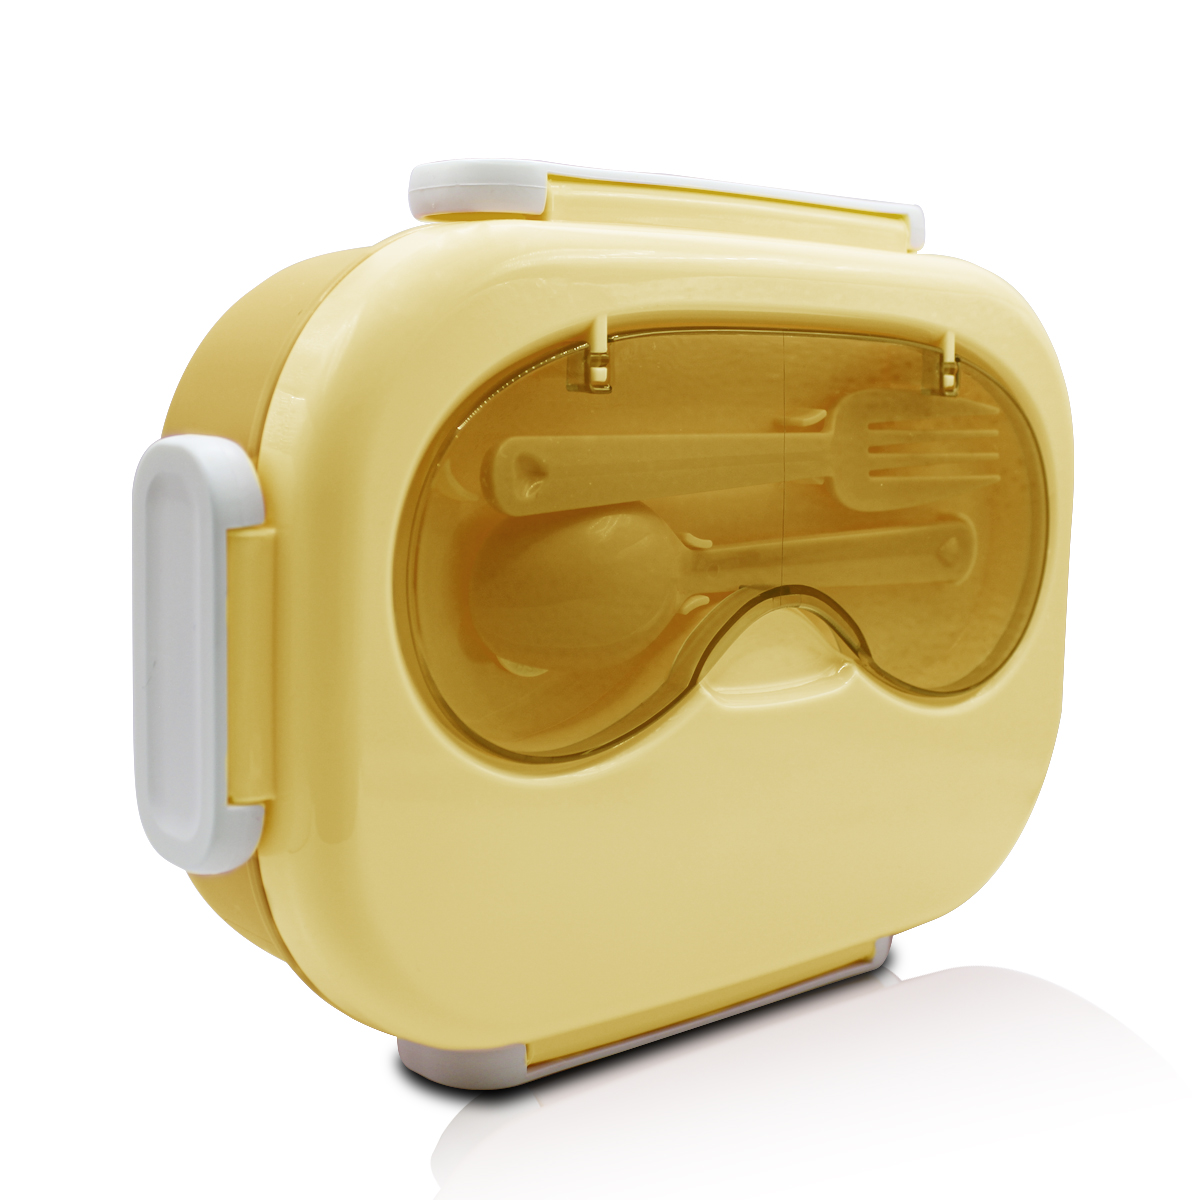 Tupper lunch box rectangular de 3 compartimentos con cubiertos y